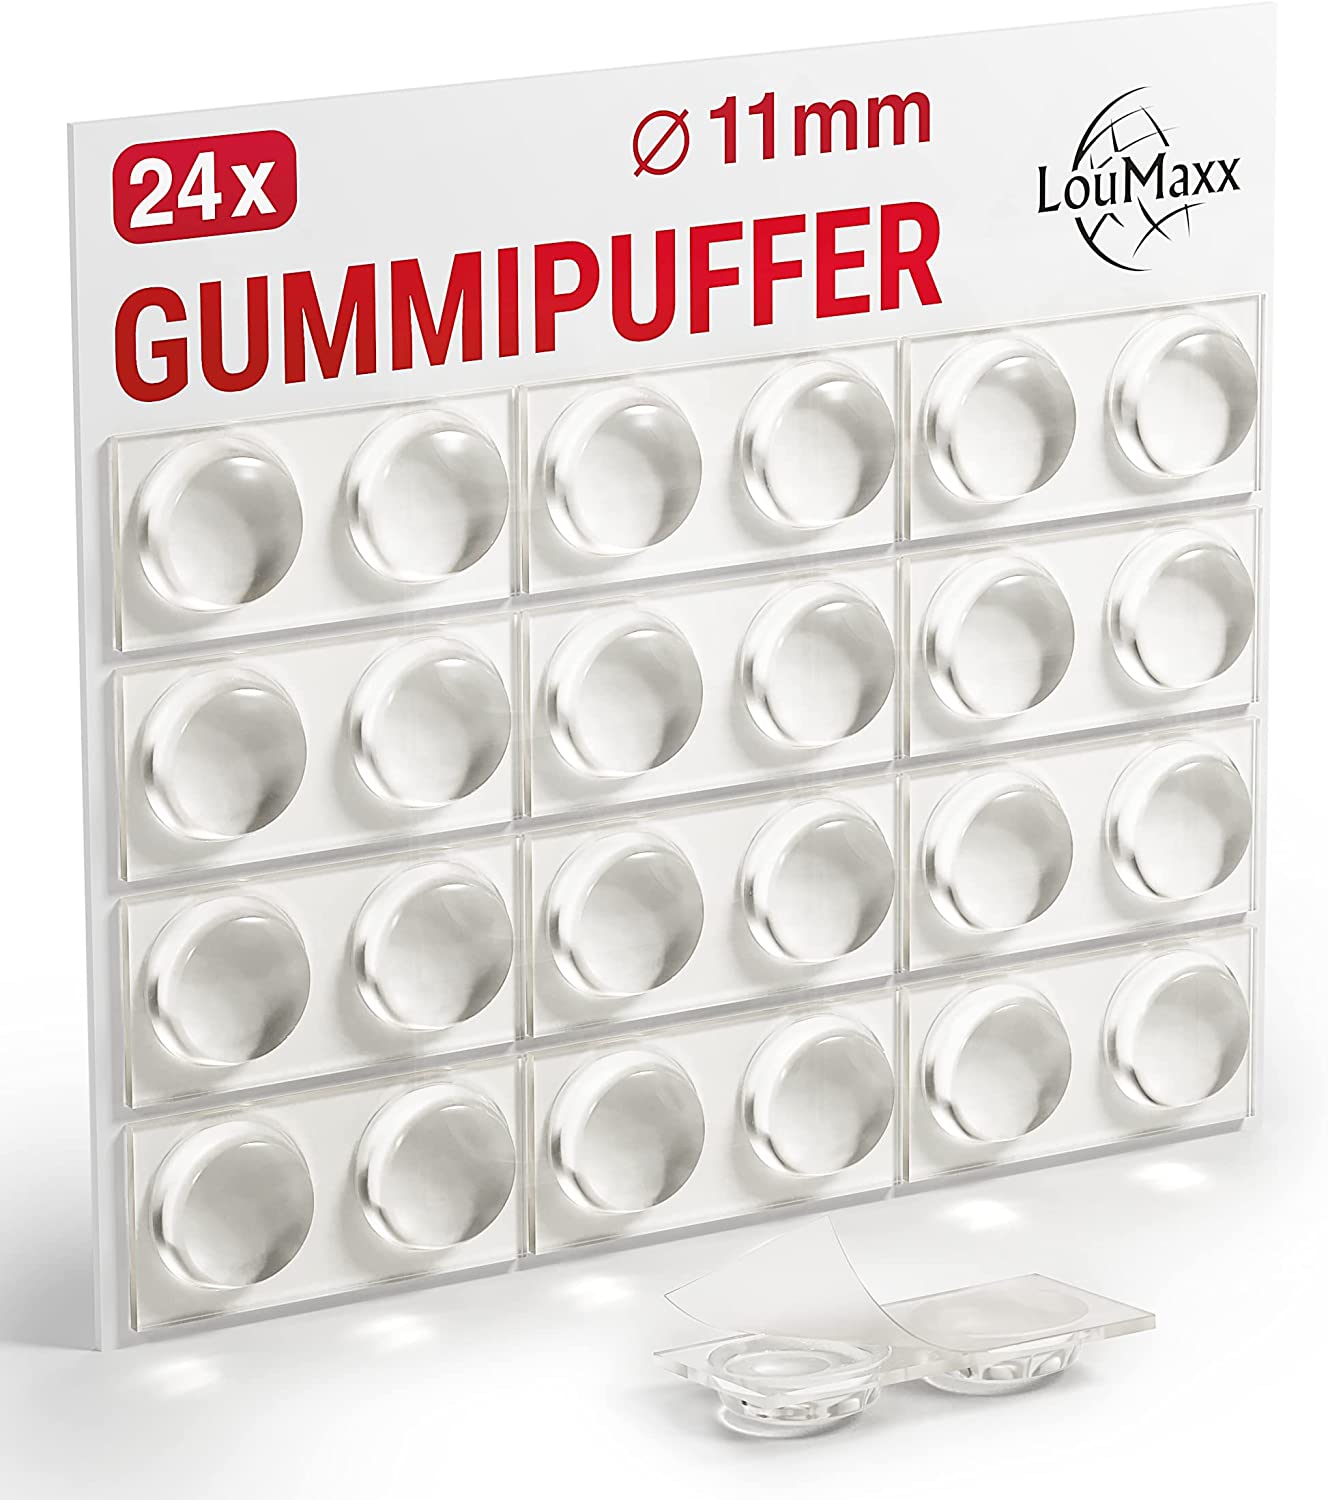 LouMaxx Gummipuffer - 24x Puffer transparent 11mm Ø - Gumminoppen für